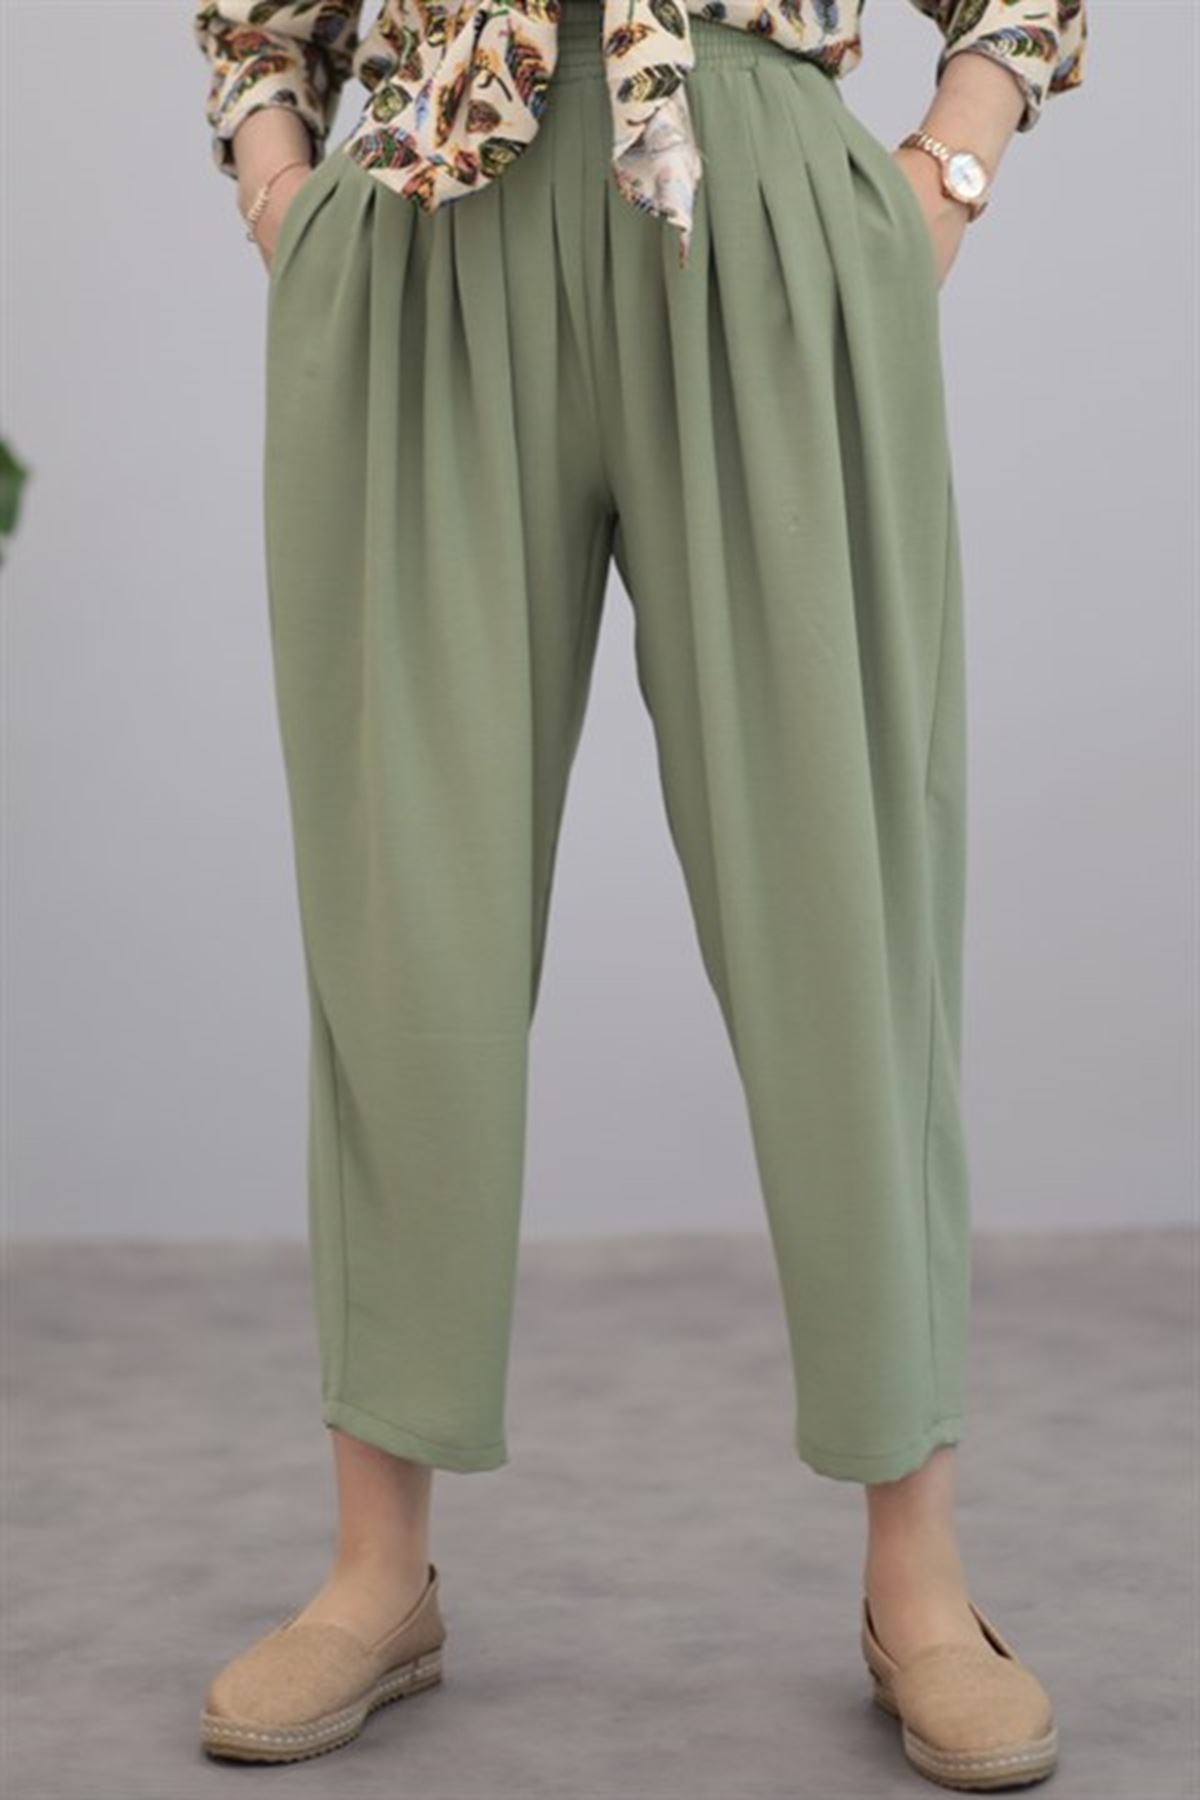 Kadın Pileli Salaş pantolon - Fıstık Yeşili